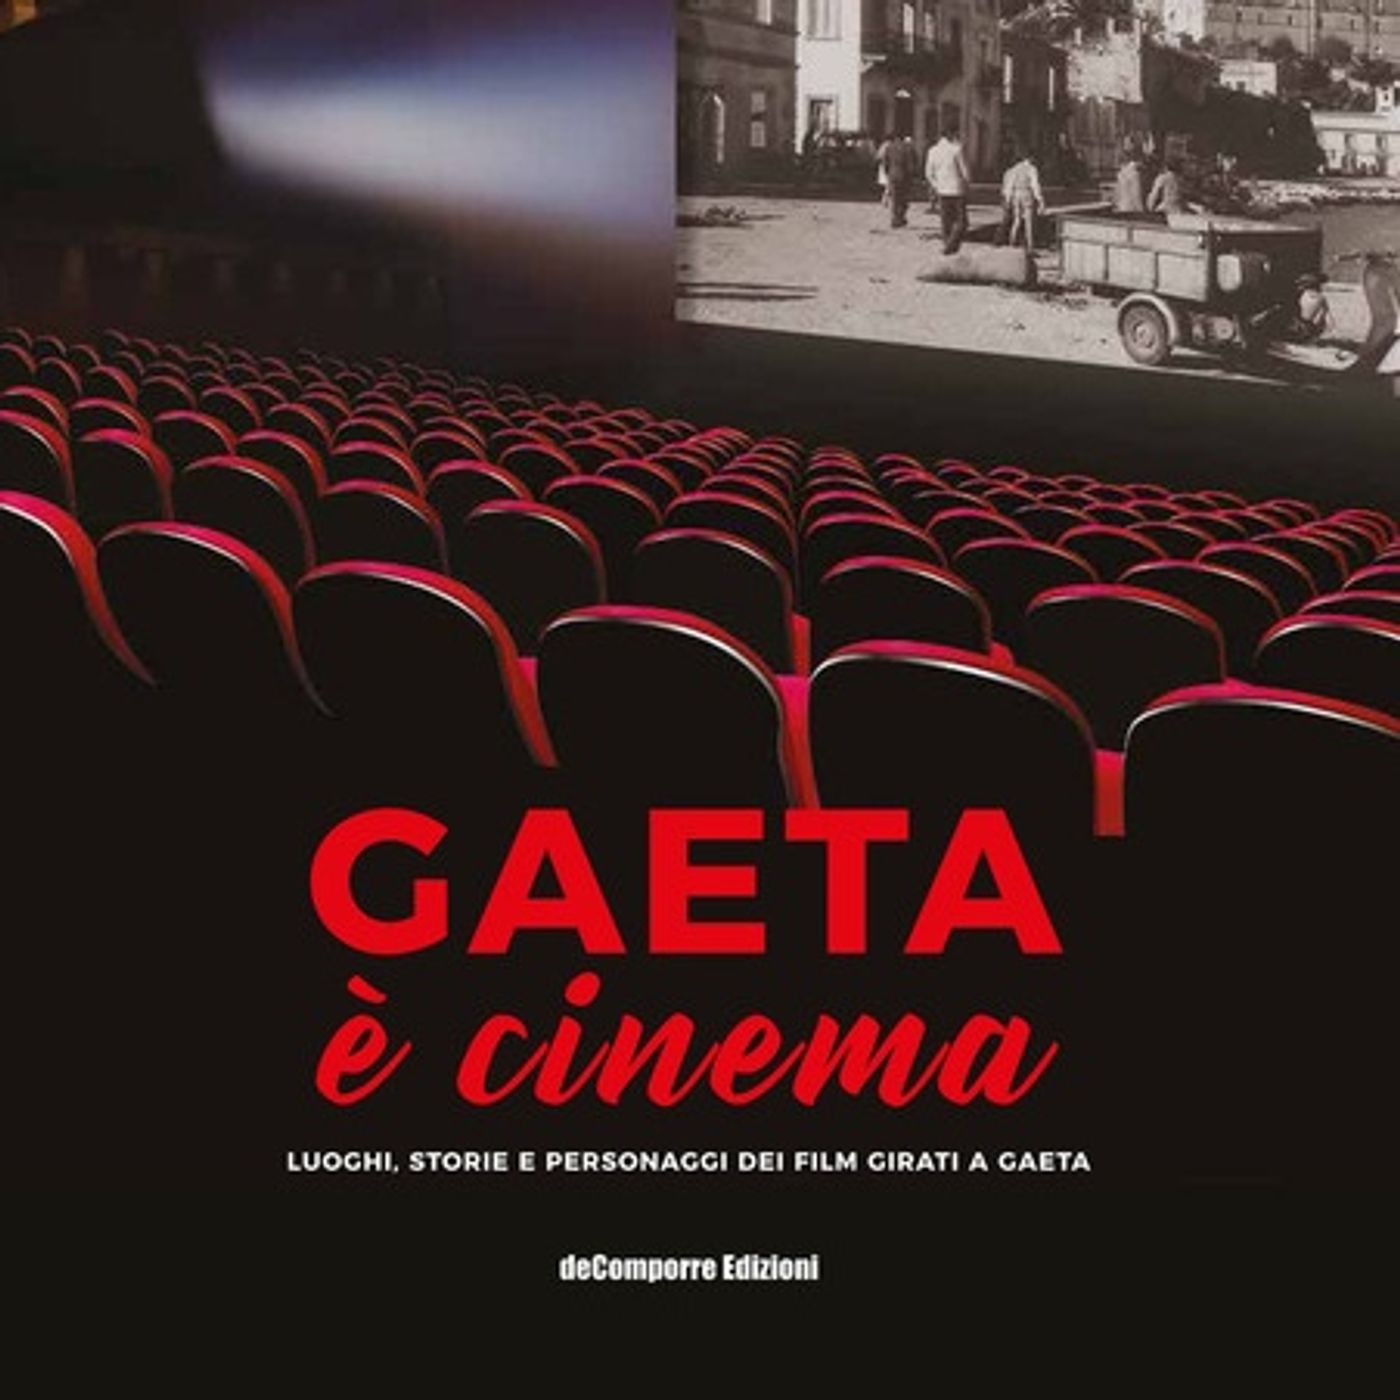 Intervista ad Antonio Di Tucci autore di "Gaeta è cinema"